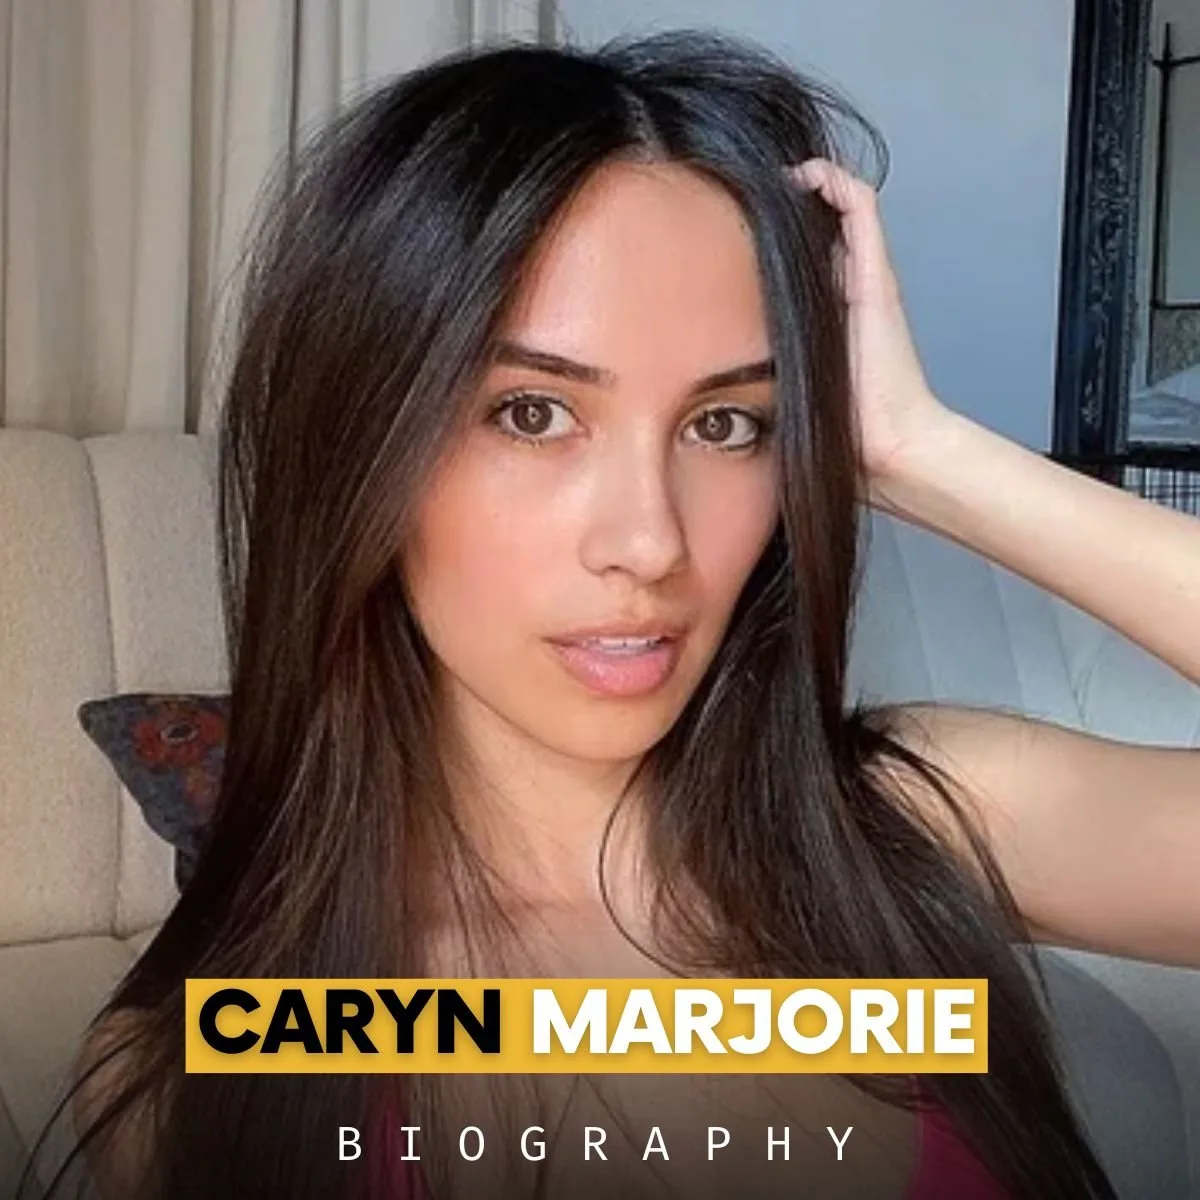 Caryn Marjorie biography